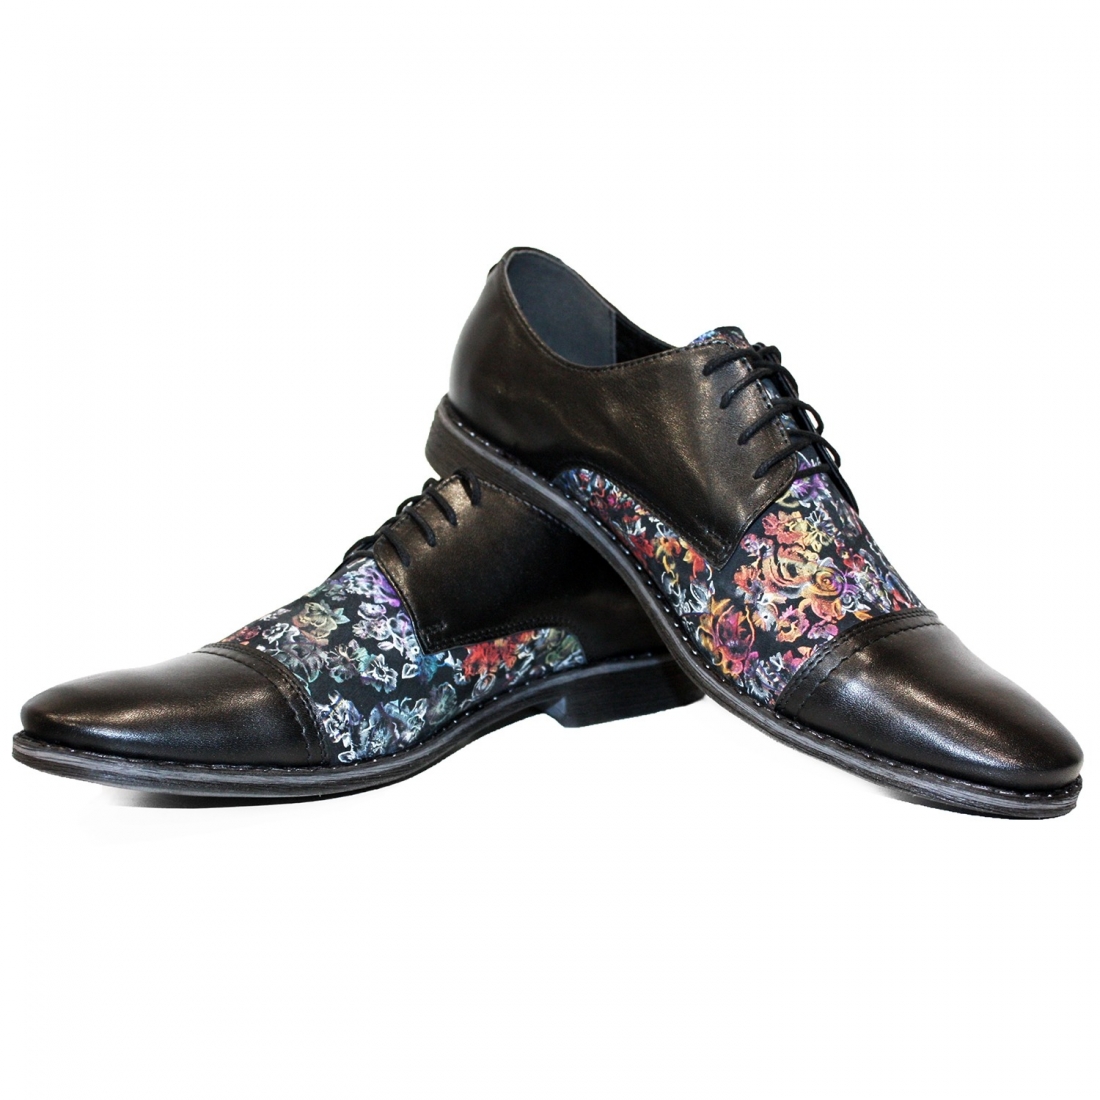 Modello Nusherro - Scarpe Classiche - Handmade Colorful Italian Leather Shoes